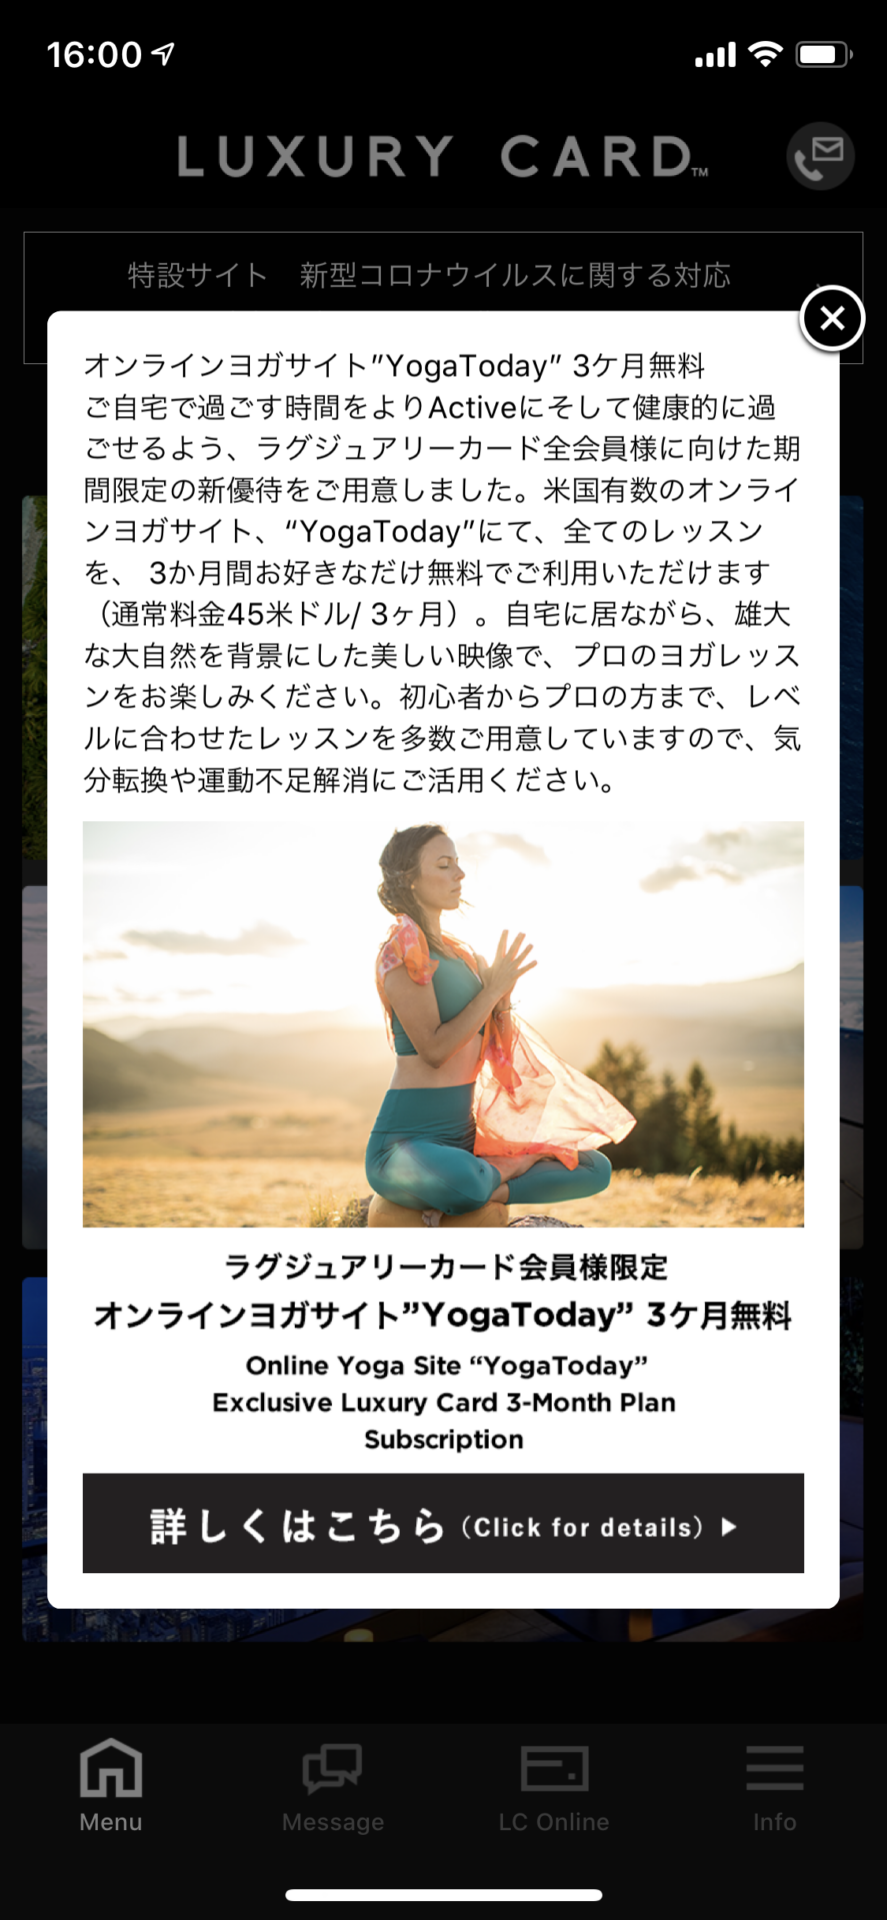 オンラインヨガサイト「YogaToday」の3ヶ月無料特典の概要